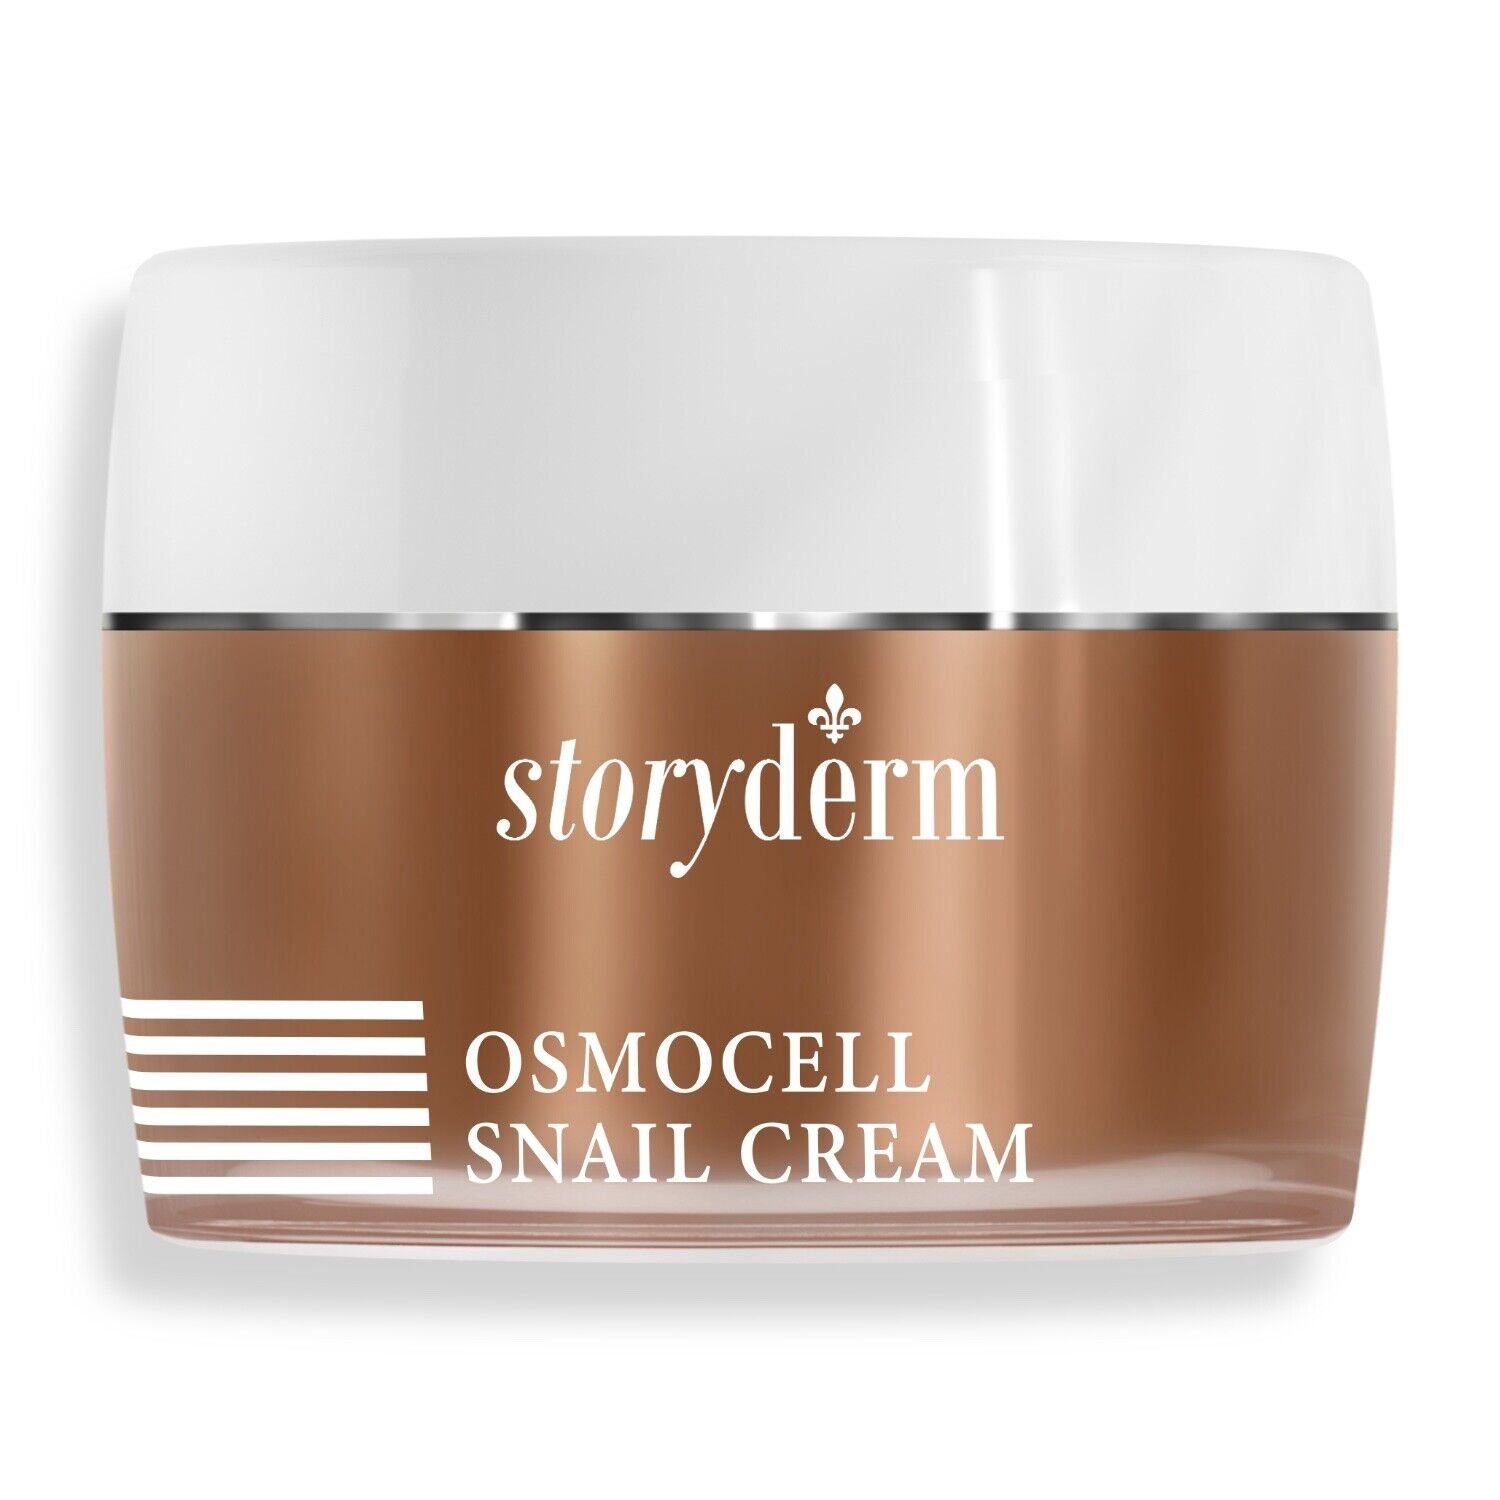 Storyderm Tagescreme Osmo Cell Snail Cream Storyderm Tagescreme für Sie & Ihn mit Schneckensekret REGENERATIONSCREME MIT SCHNECKENSEKRET